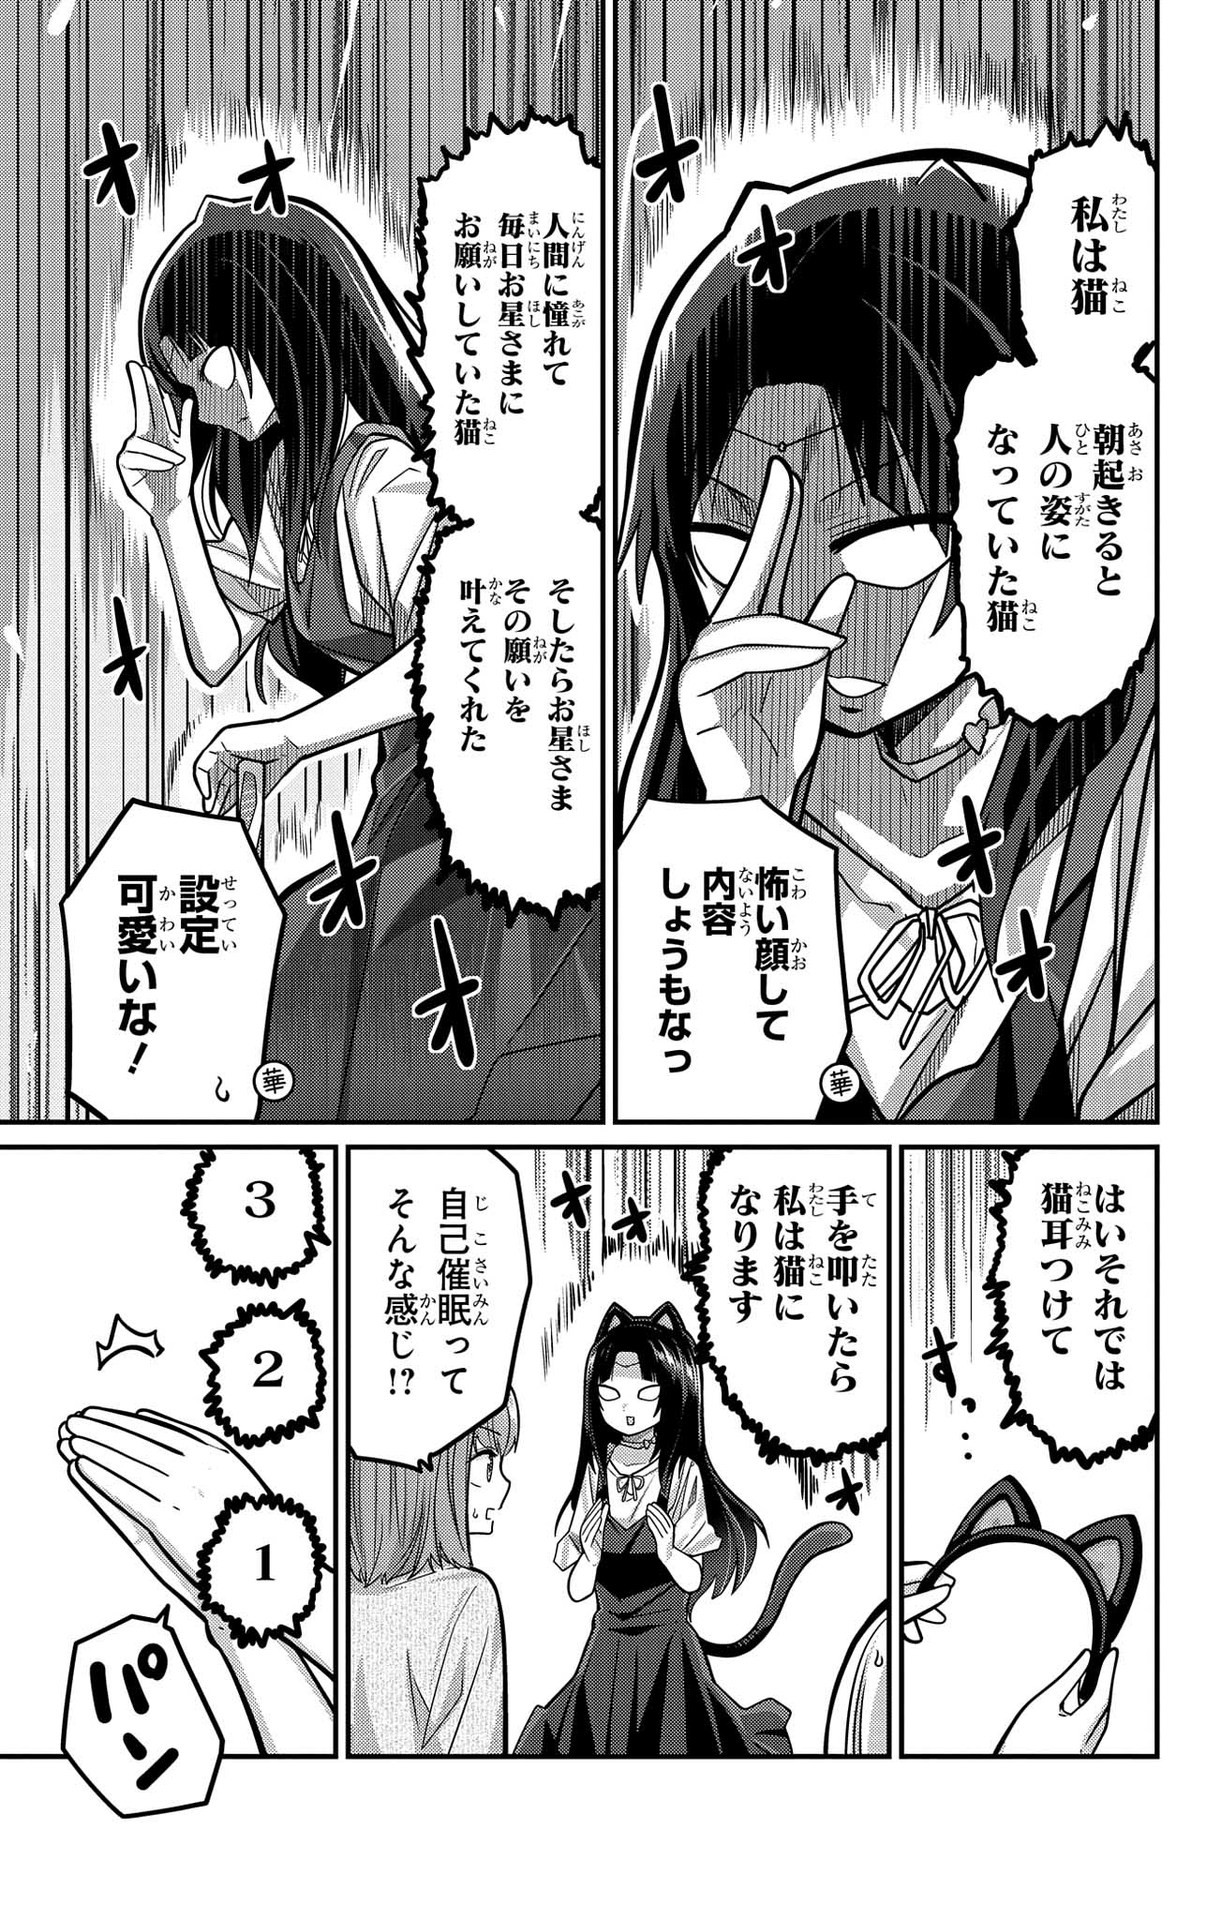 Kawaisugi Crisis - Chapter 96 - Page 7